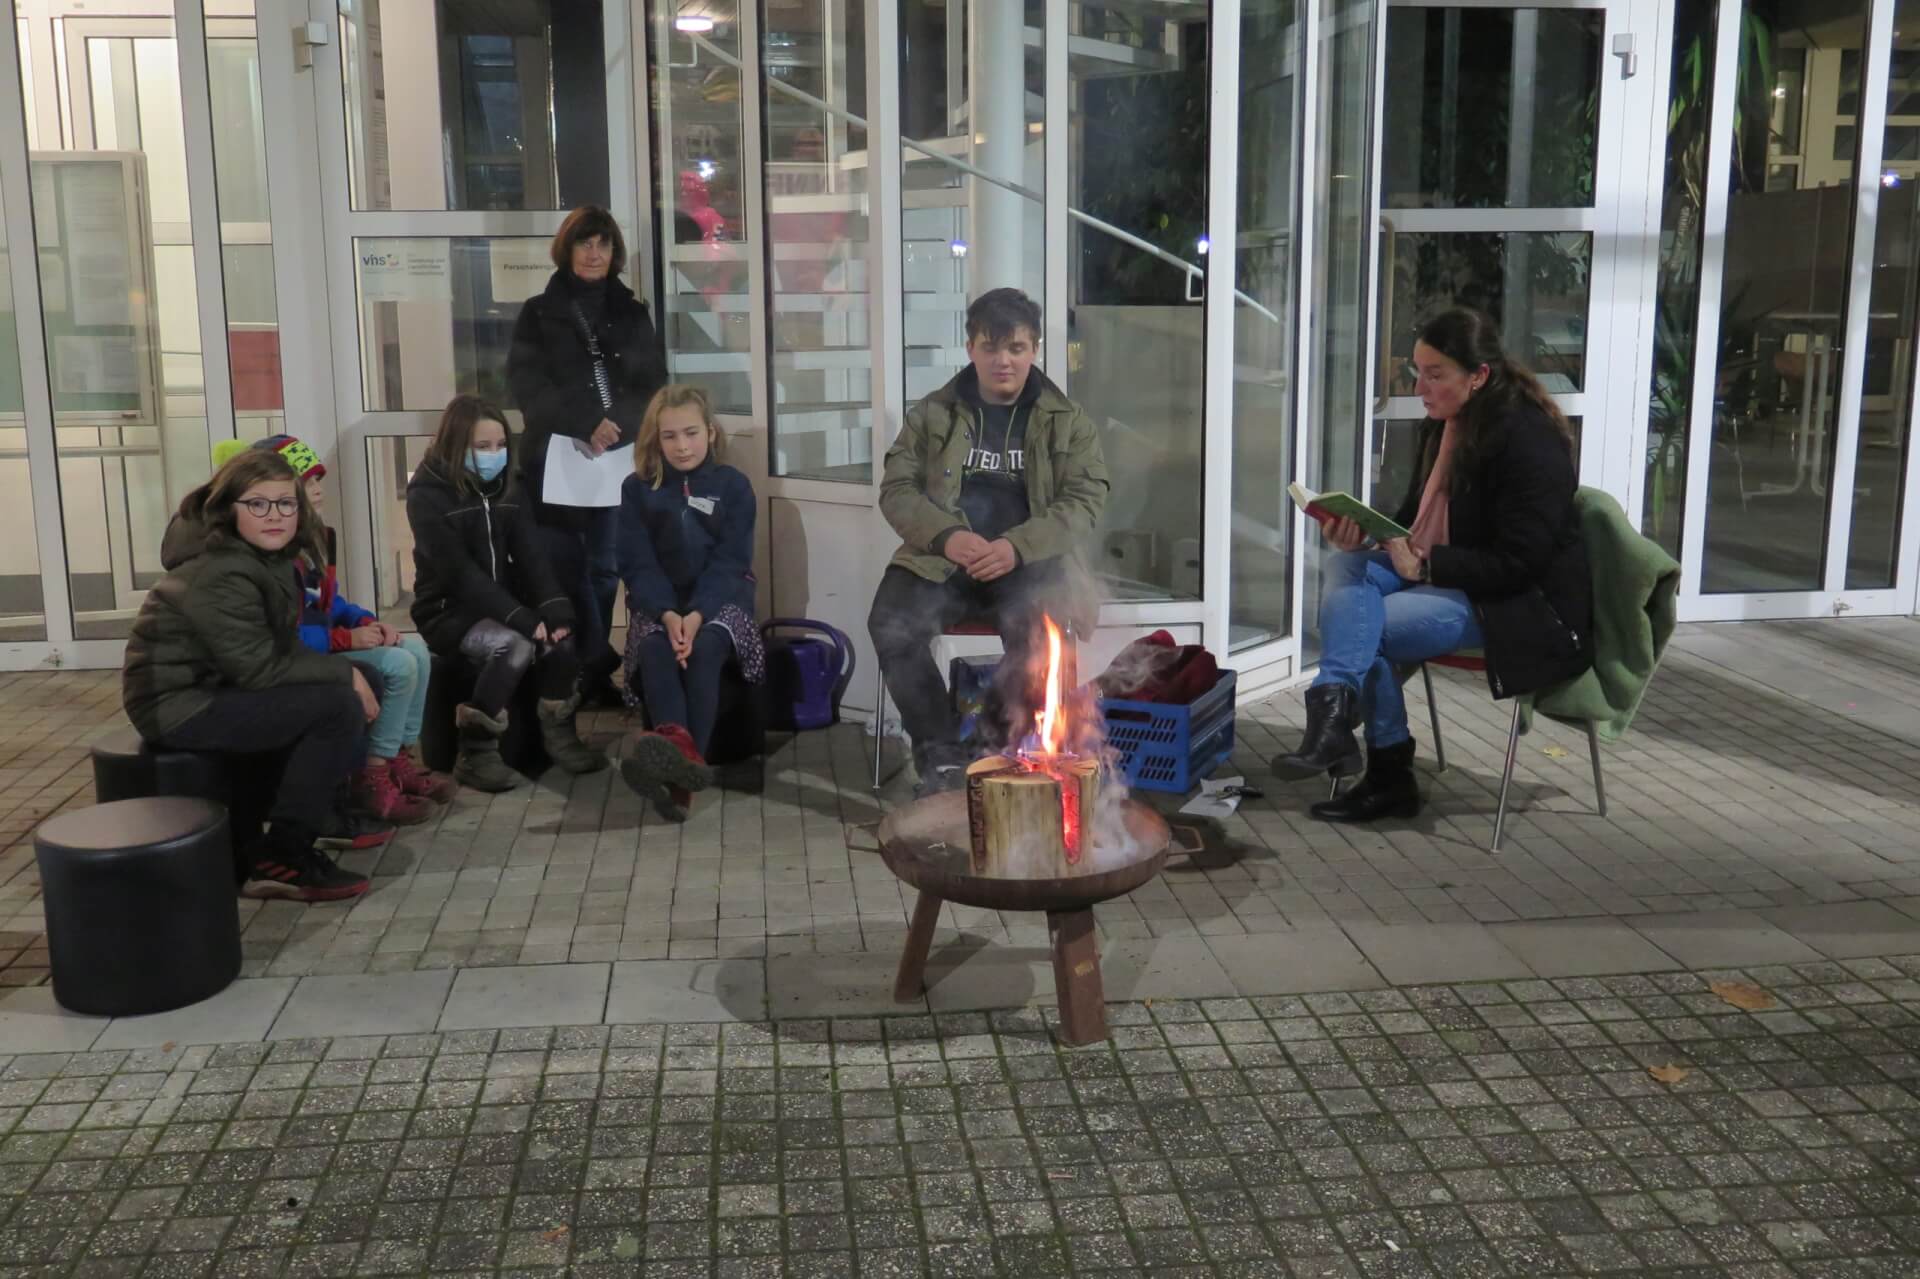 Kinder sitzen auf Bänken vor dem Rathaus Bad Honnef einer Feuerschale. Alle tragen warme Winterkleidung. Es ist fast dunkel, nur die kleine Flamme leuchtet hell. Eine erwachsene Frau liest ihnen eine Episode aus dem Kinderbuch "Ronja Räubertochter" von Astrid Lindgren vor.